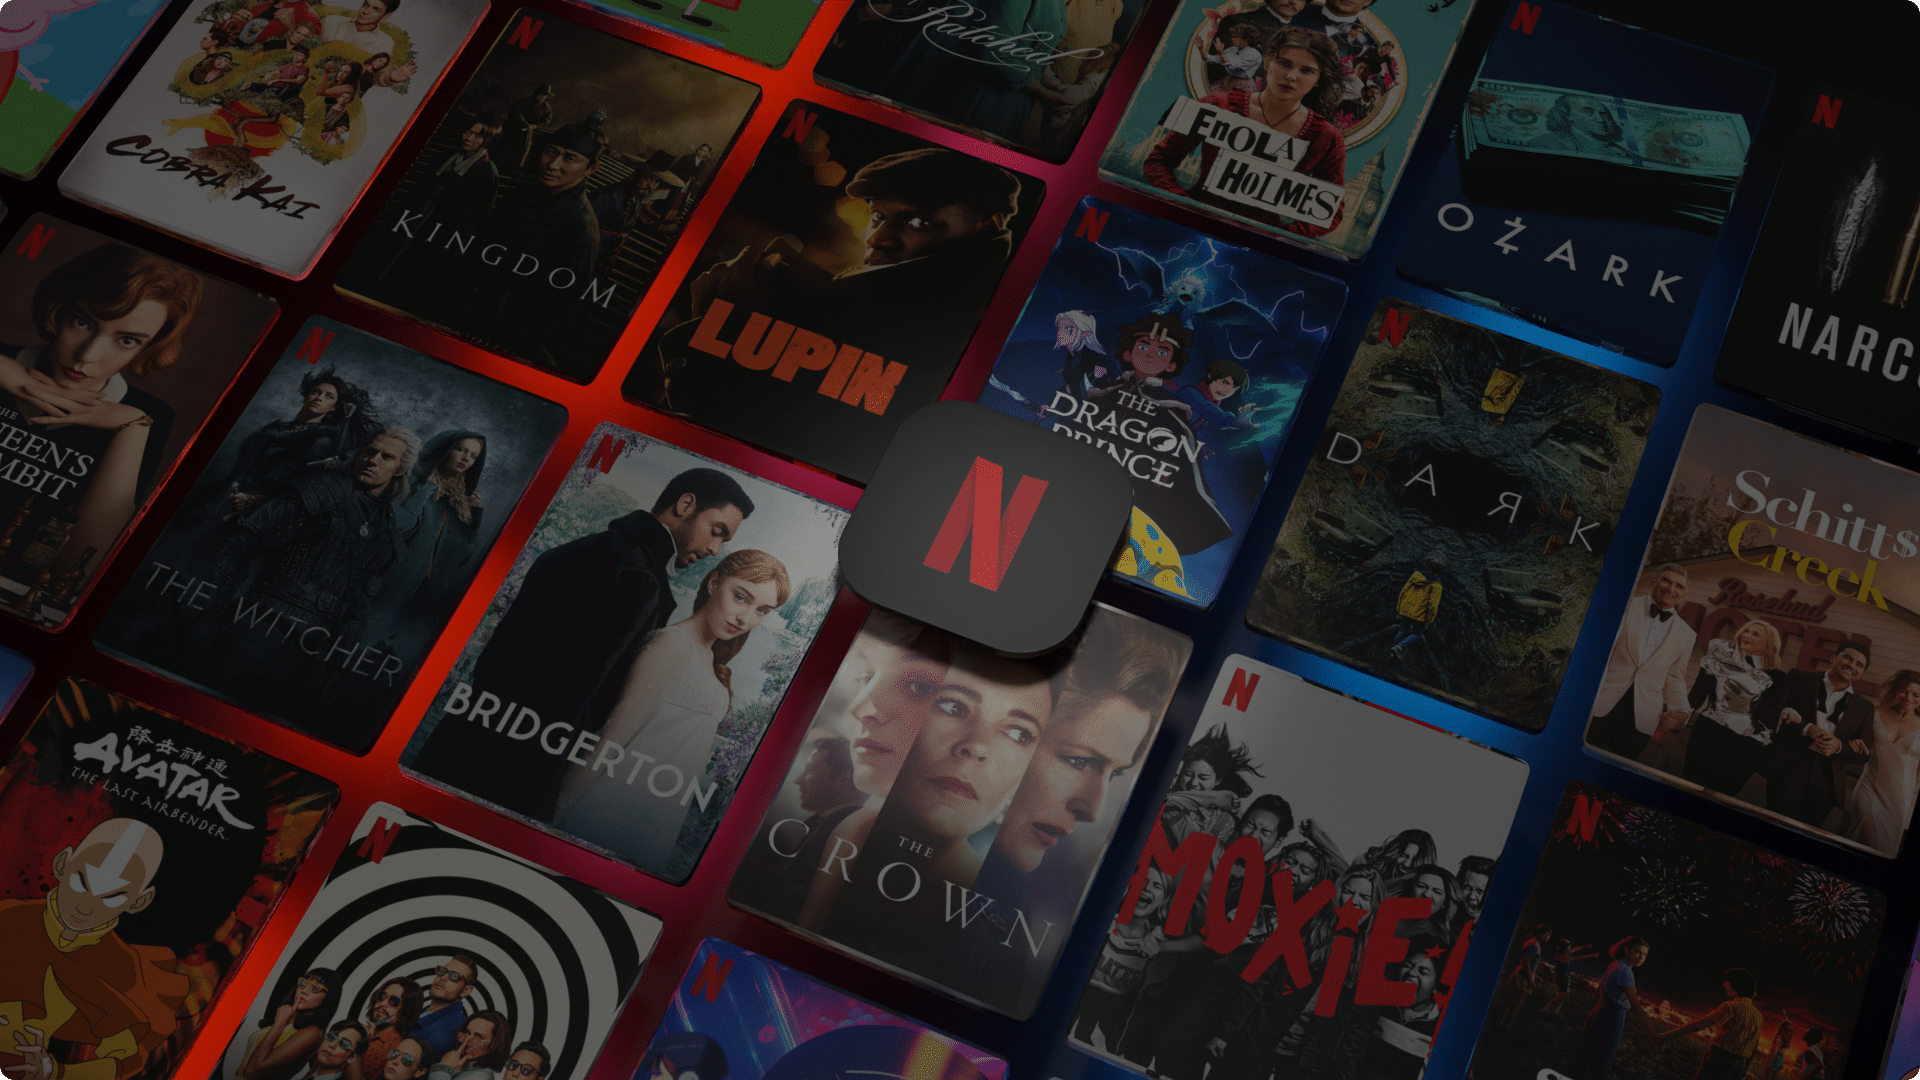 Netflix aumenta preços no Brasil; mensalidades chegam a R$55,90